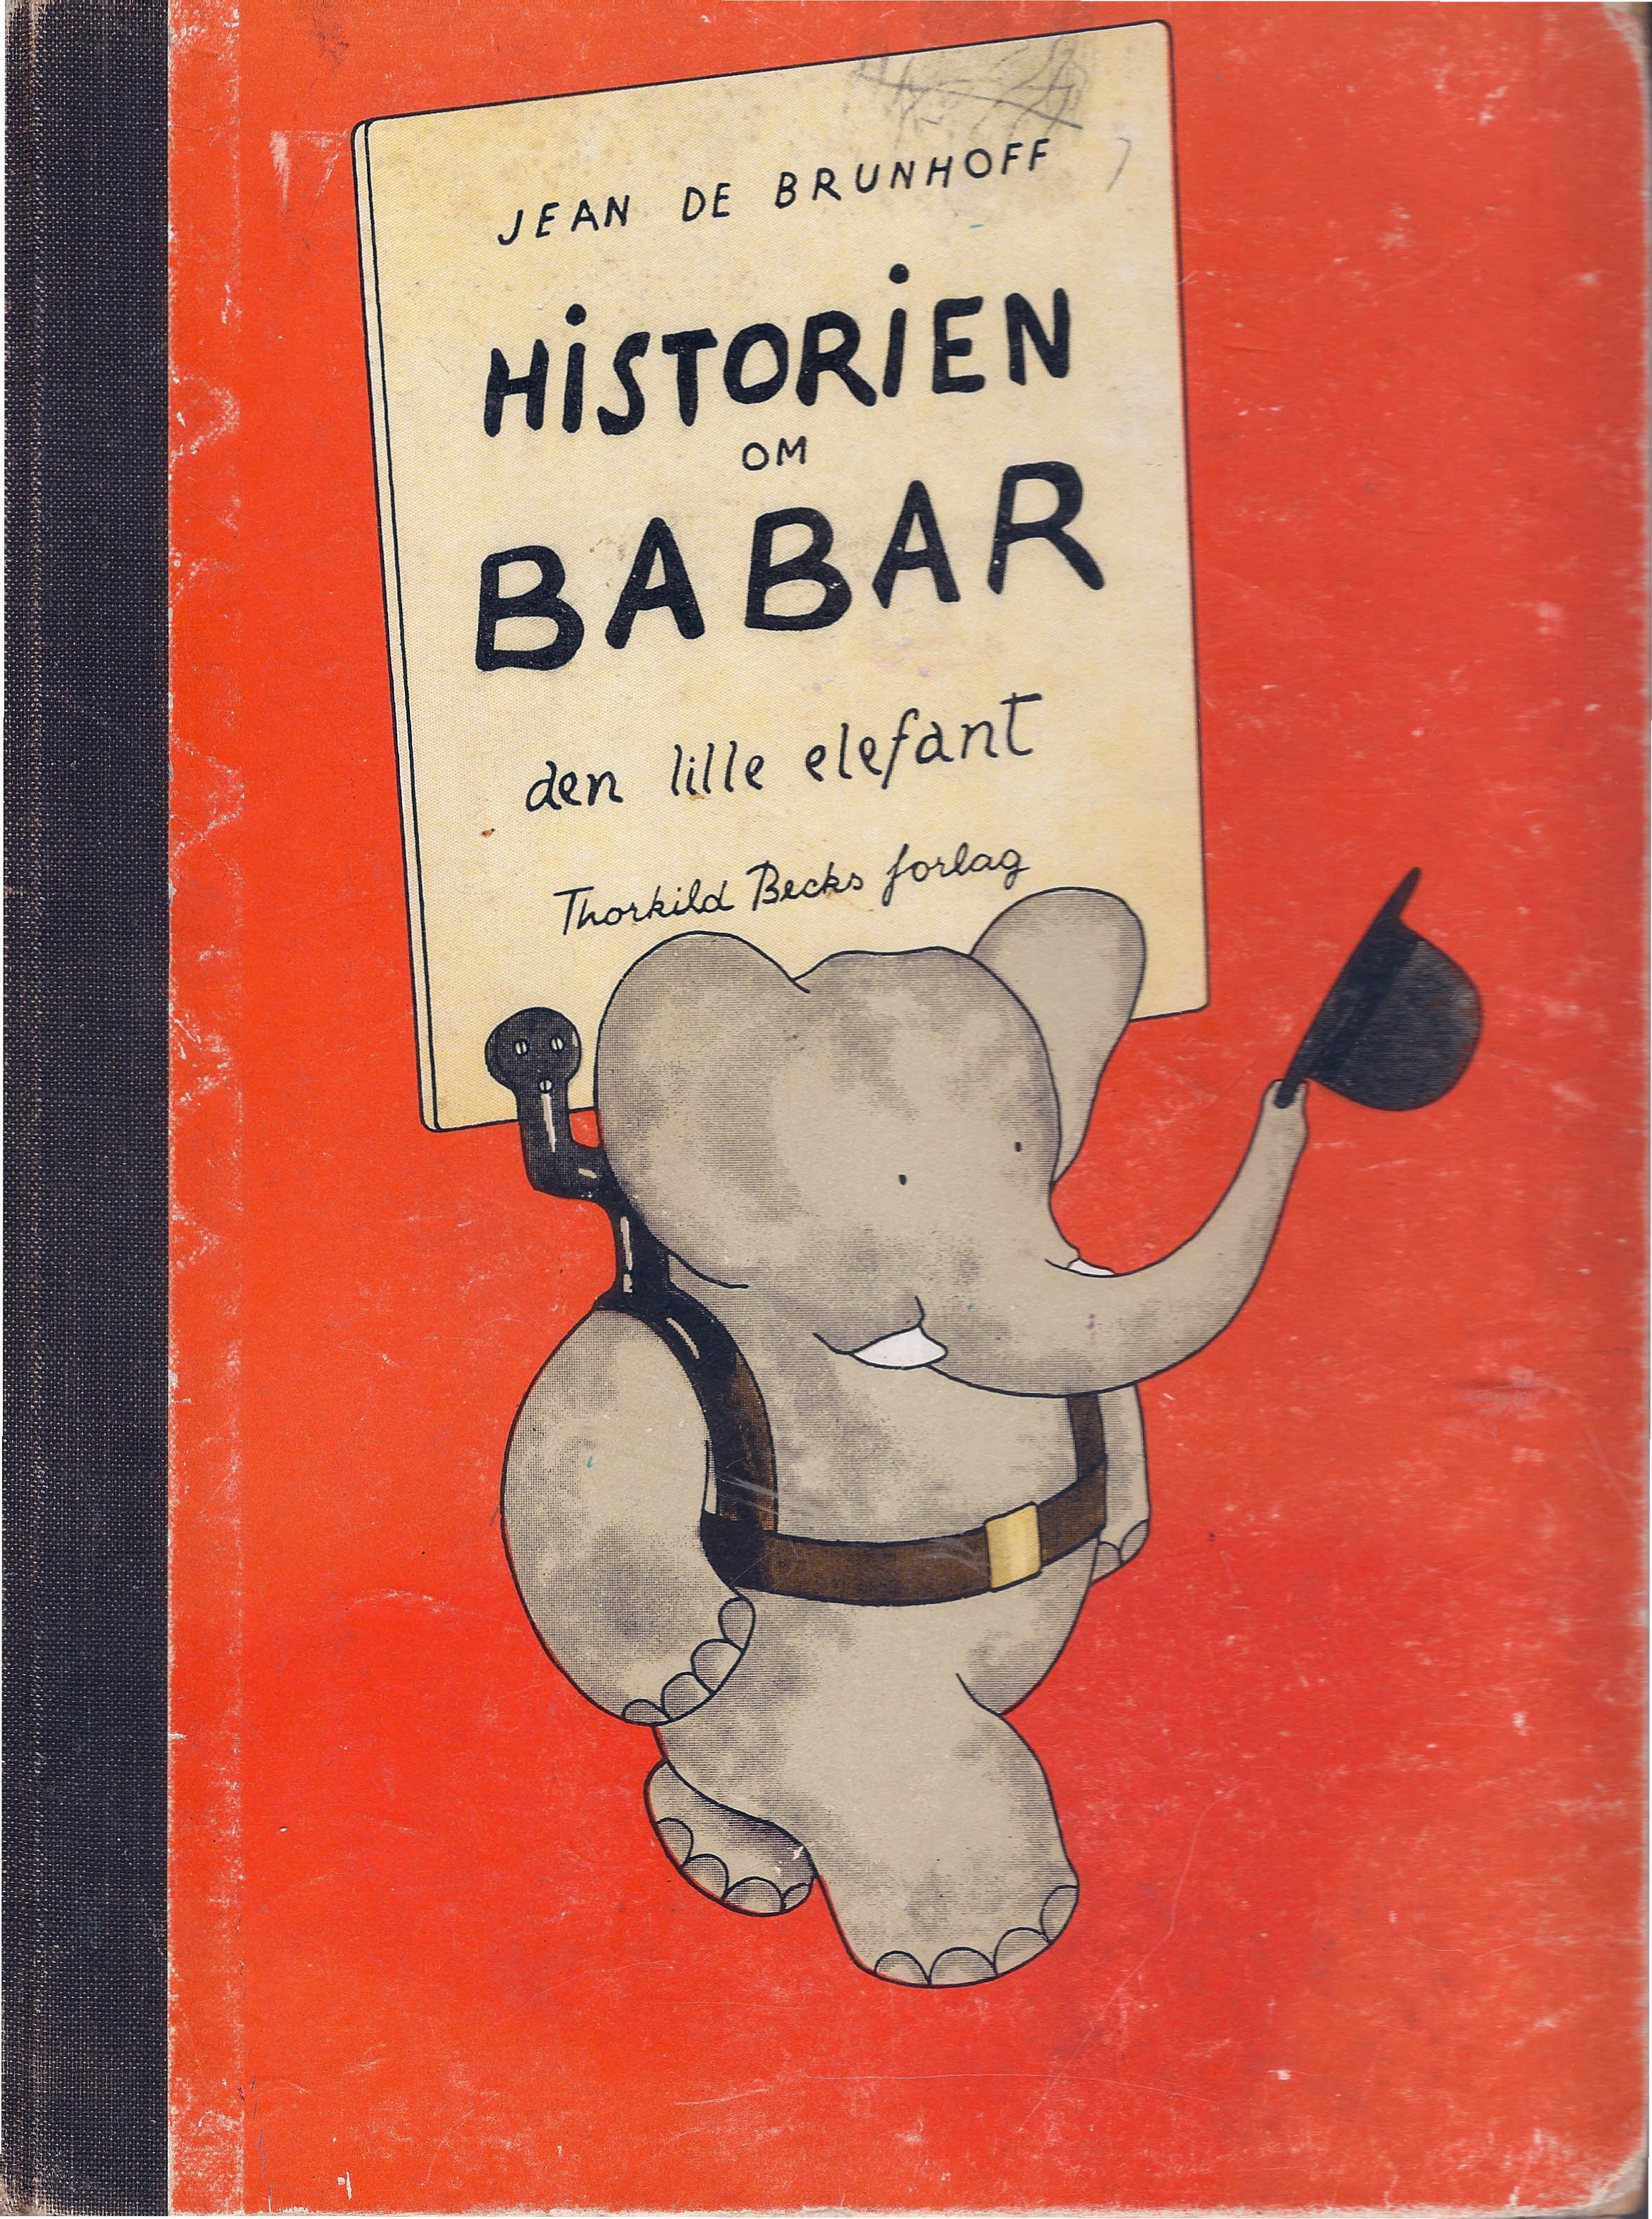 Historien om Barbar - Jean de Brunhoff - 1940'erne-1